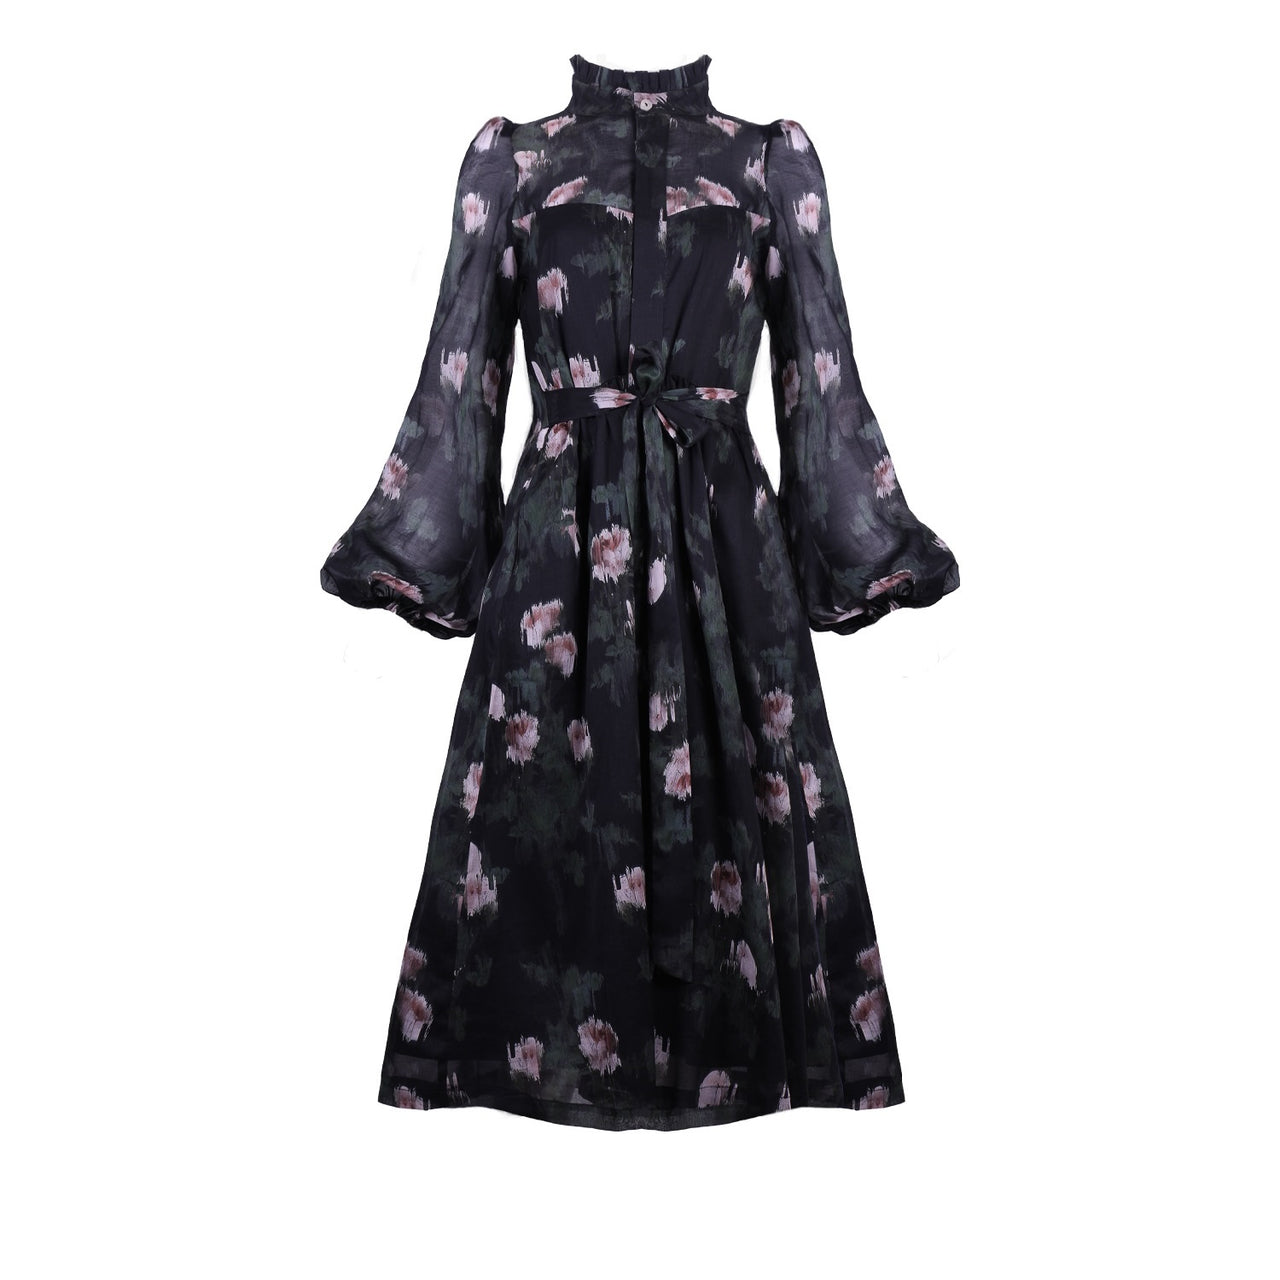 Felicia Dress / Black + Rose Watercolor Floral Cotton Voile